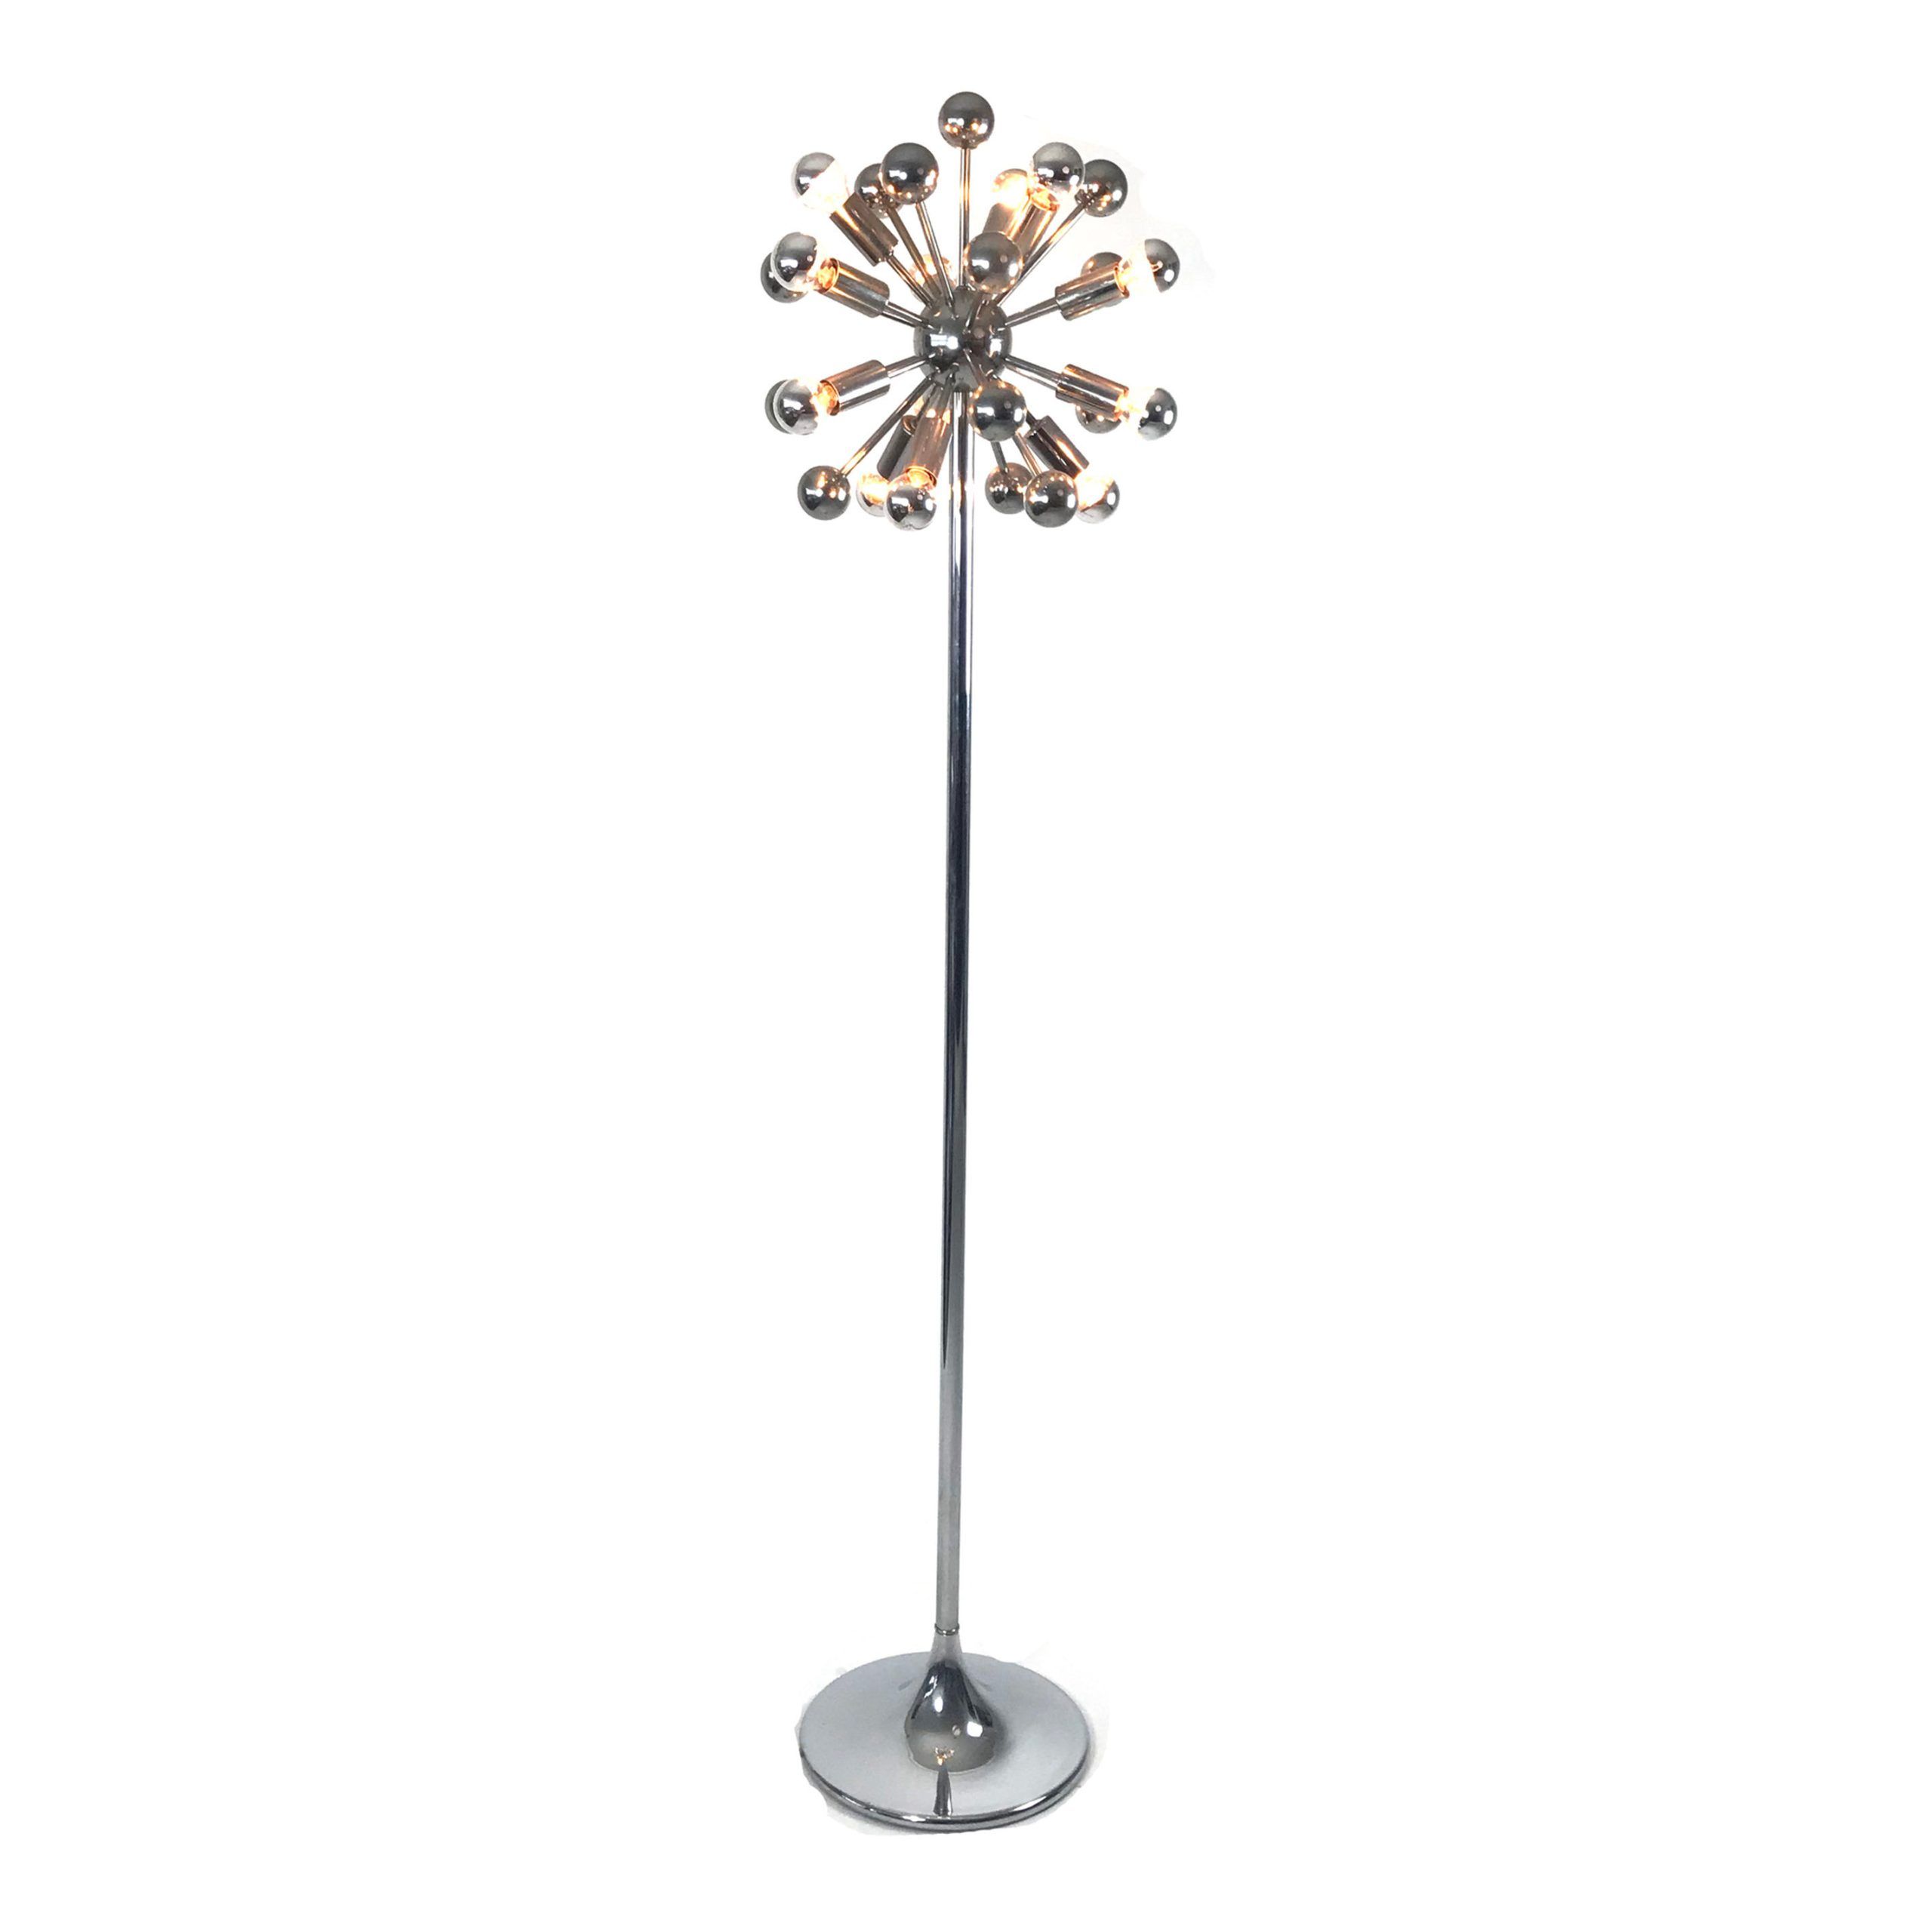 Sputnik Floor Lamp Cosack Leuchten | Objeta In Sputnik Floor Lamps (View 6 of 15)